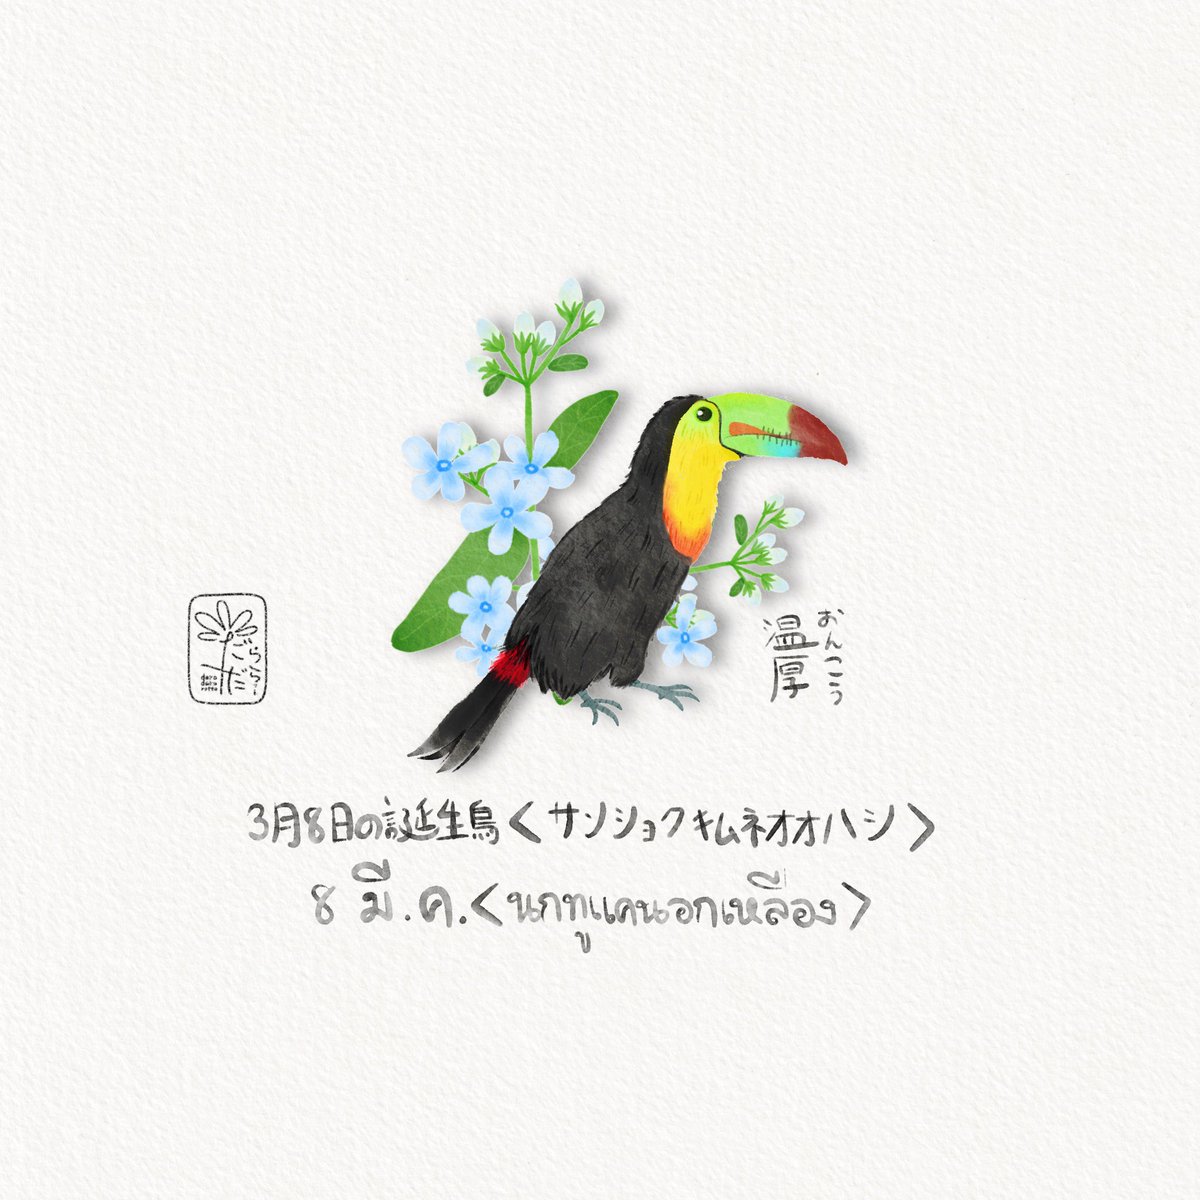 นกประจำวันเกิด 8 มีนาคม
“นกทูแคนคอเหลือง”
'ความสุภาพอ่อนโยน'

3月8日の誕生鳥　'サンショクキムネオオハシ'
“温厚(おんこう)”

March 8rd of birthday bird
“Keel-billed toucan”
“Gentle”

ดอกไม้วันเกิด 8 มี.ค 'บลูสตาร์”
“ความรักที่มีความสุข”
3月8日 “ルリトウワタ'
“幸福な愛'
March8th…